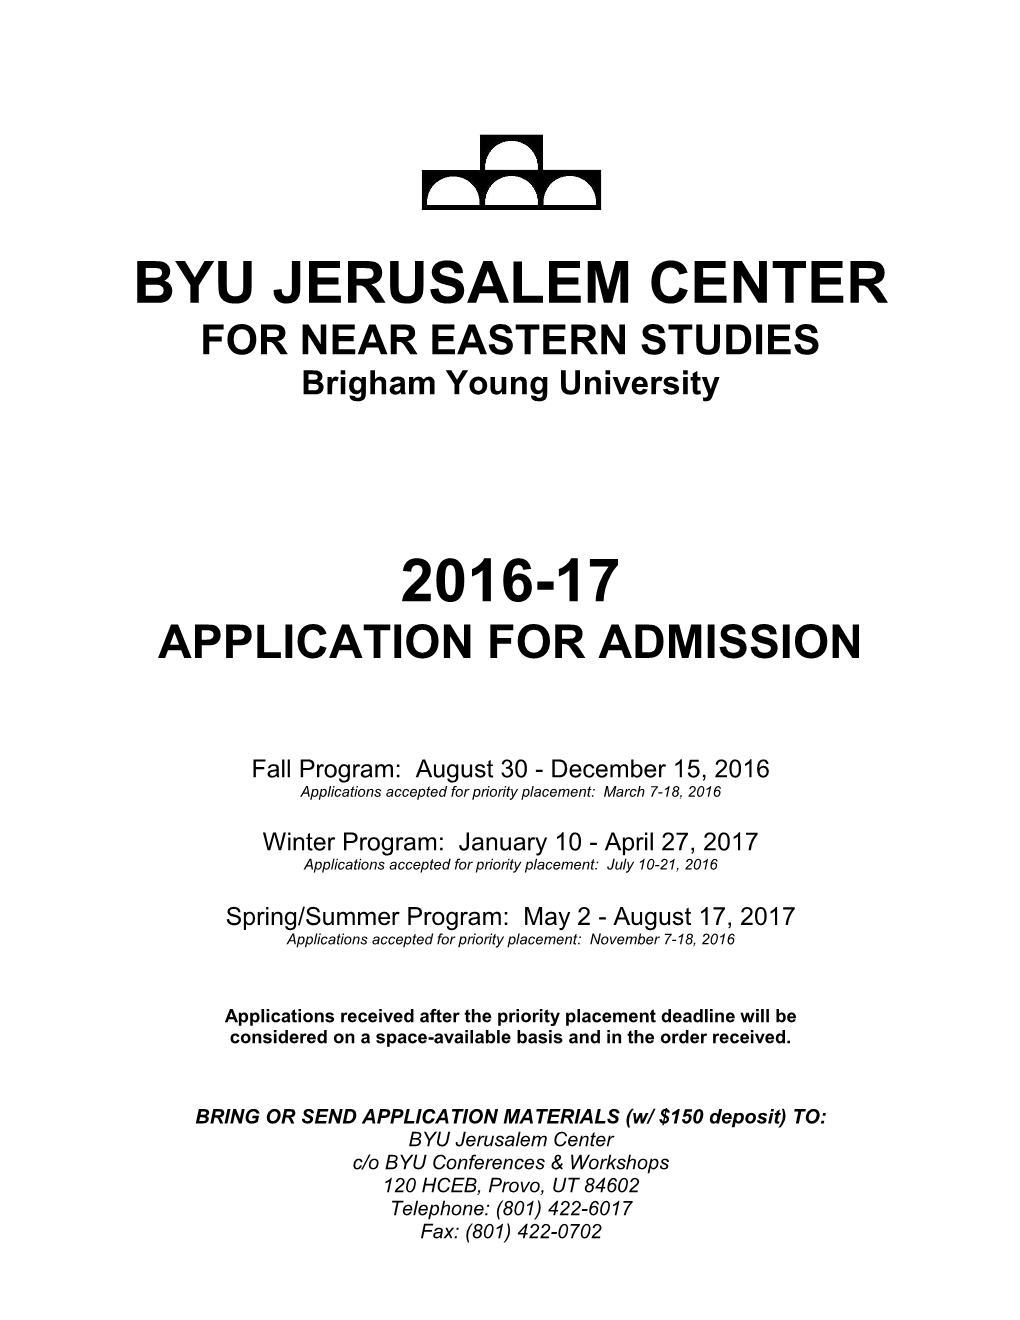 BYU Jerusalem Center Part 1